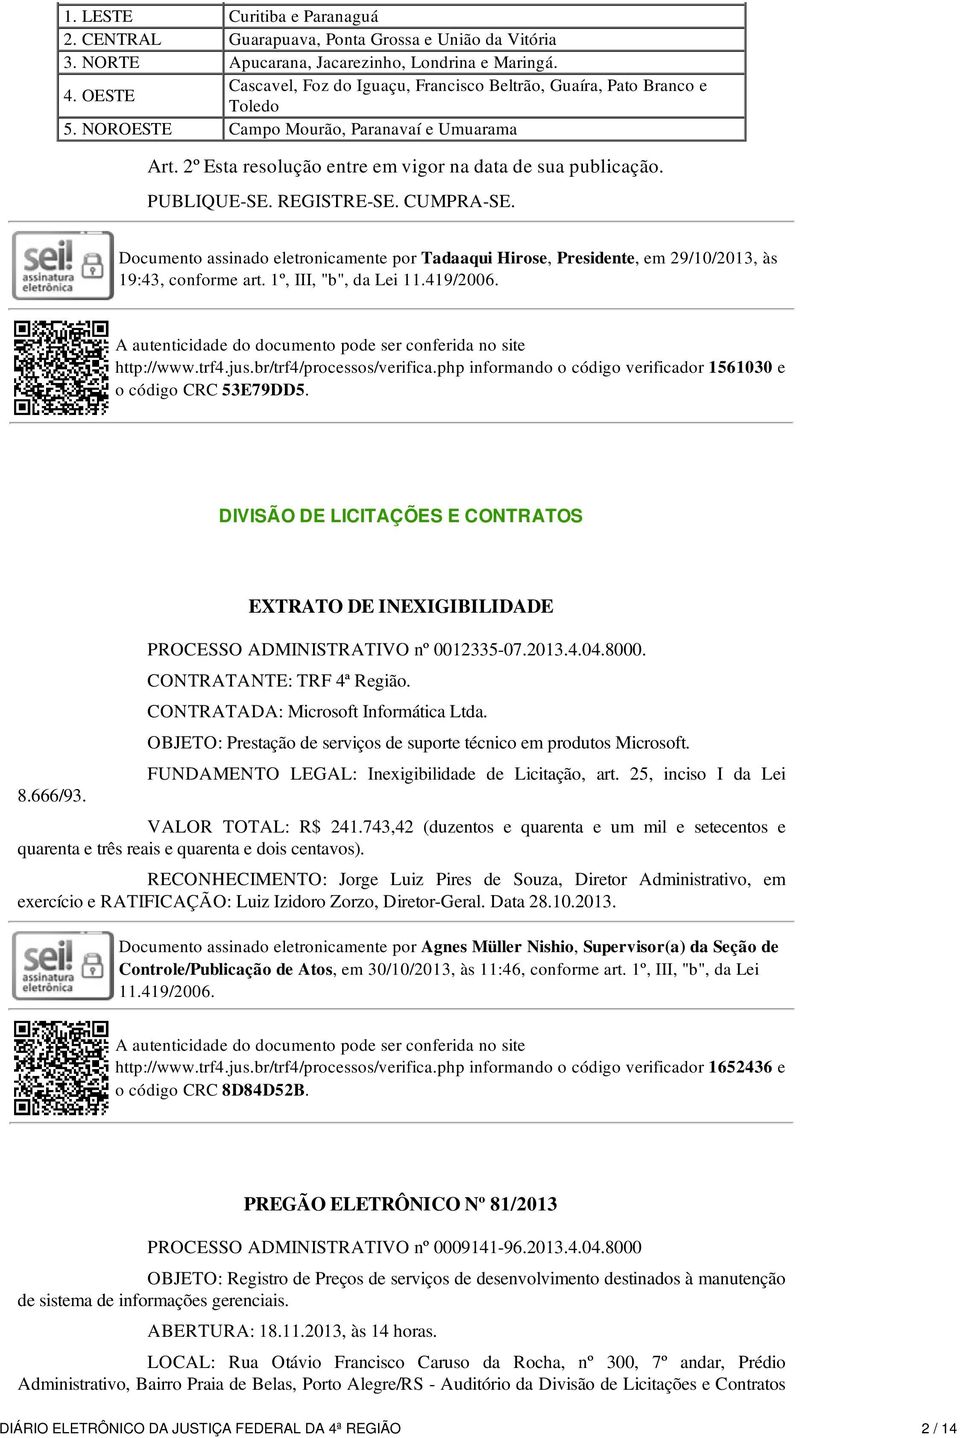 Documento assinado eletronicamente por Tadaaqui Hirose, Presidente, em 29/10/2013, às 19:43, conforme art. 1º, III, "b", da Lei 11.419/2006. http://www.trf4.jus.br/trf4/processos/verifica.